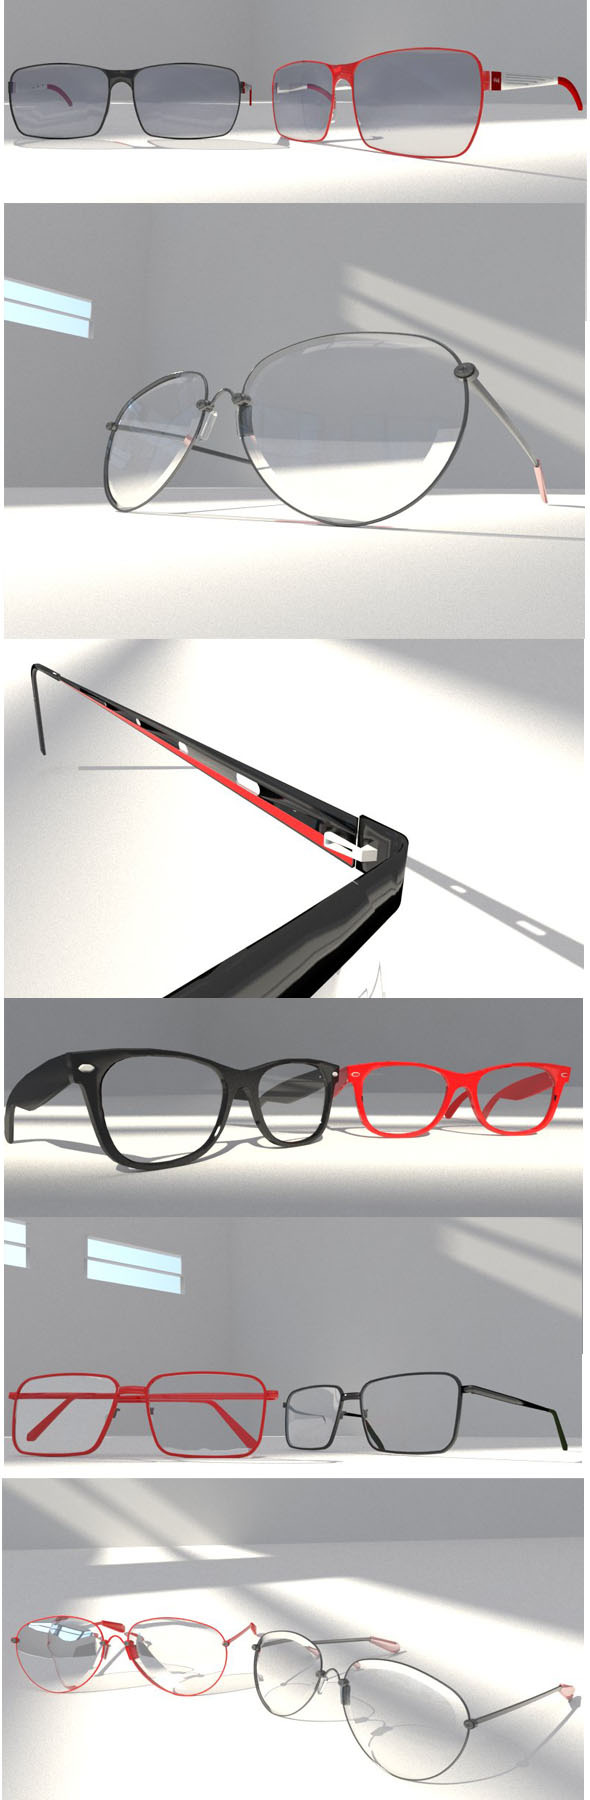 10 EYE glasses - 3Docean 12670058